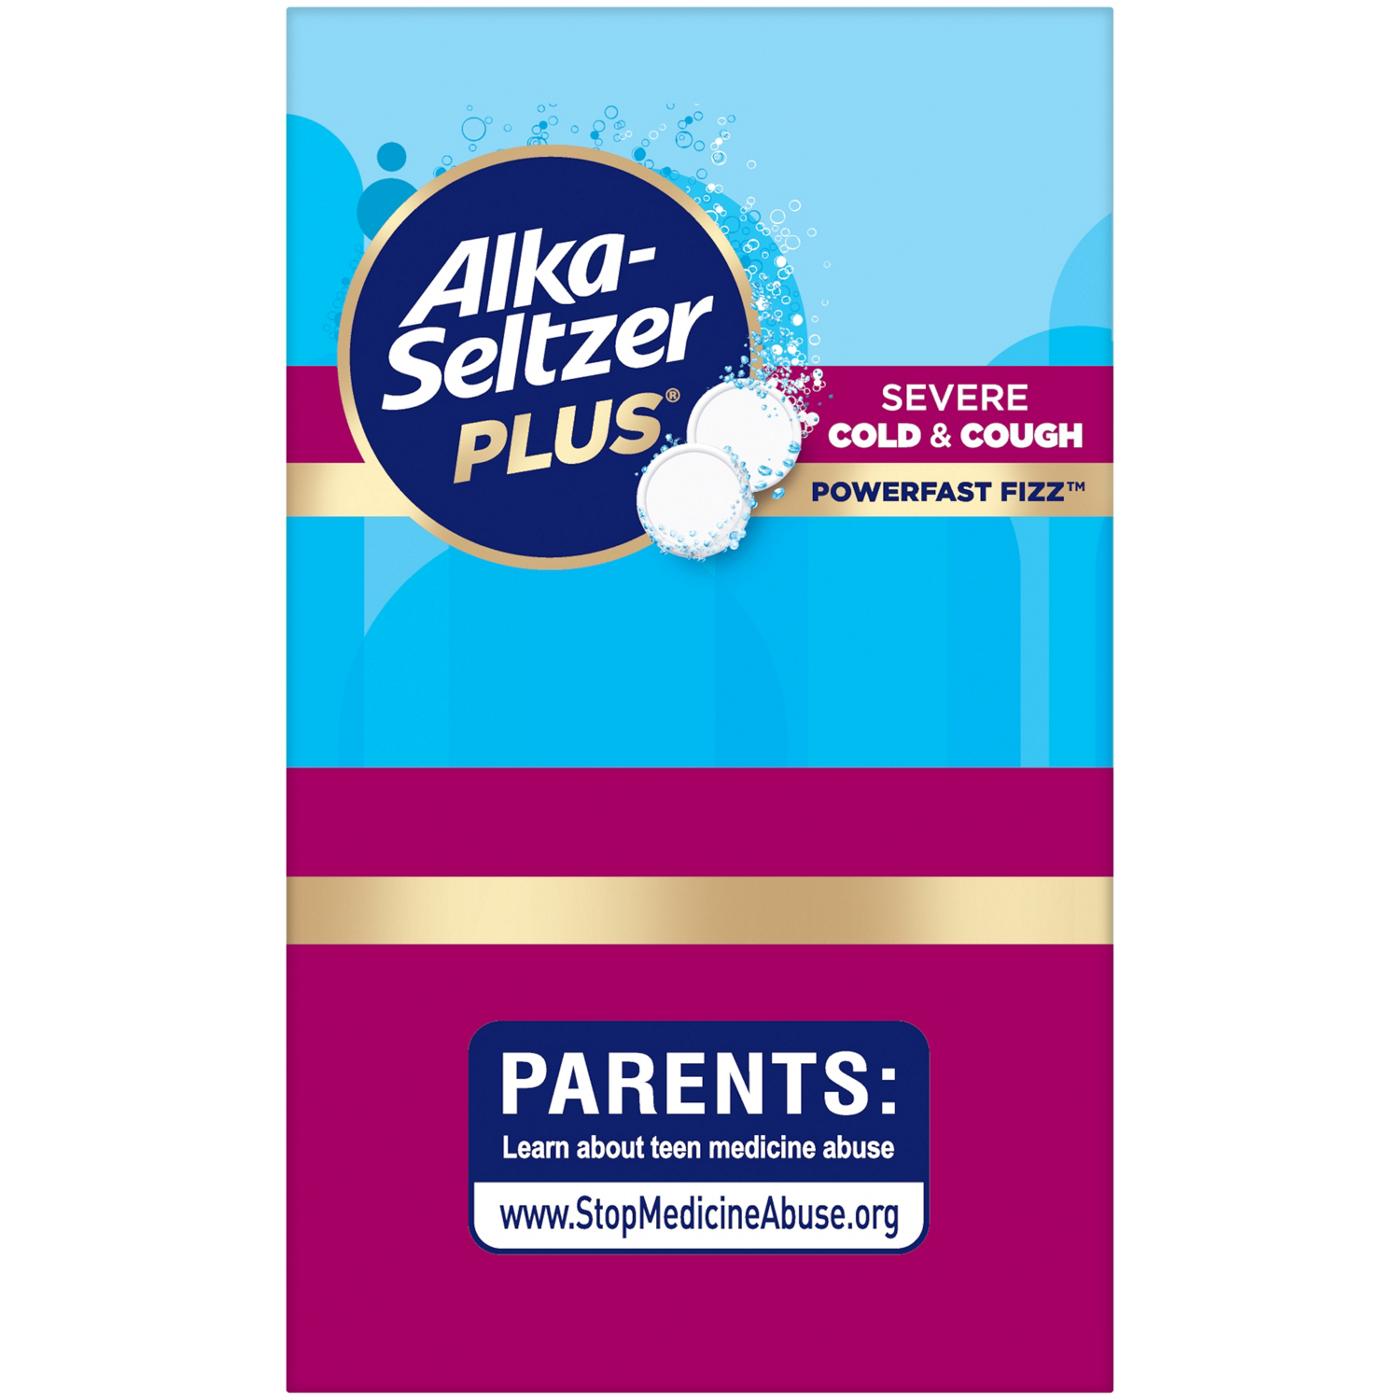 Alka-Seltzer Plus Severe Cold & Cough Powerfast Fizz Tablets - Citrus; image 6 of 6